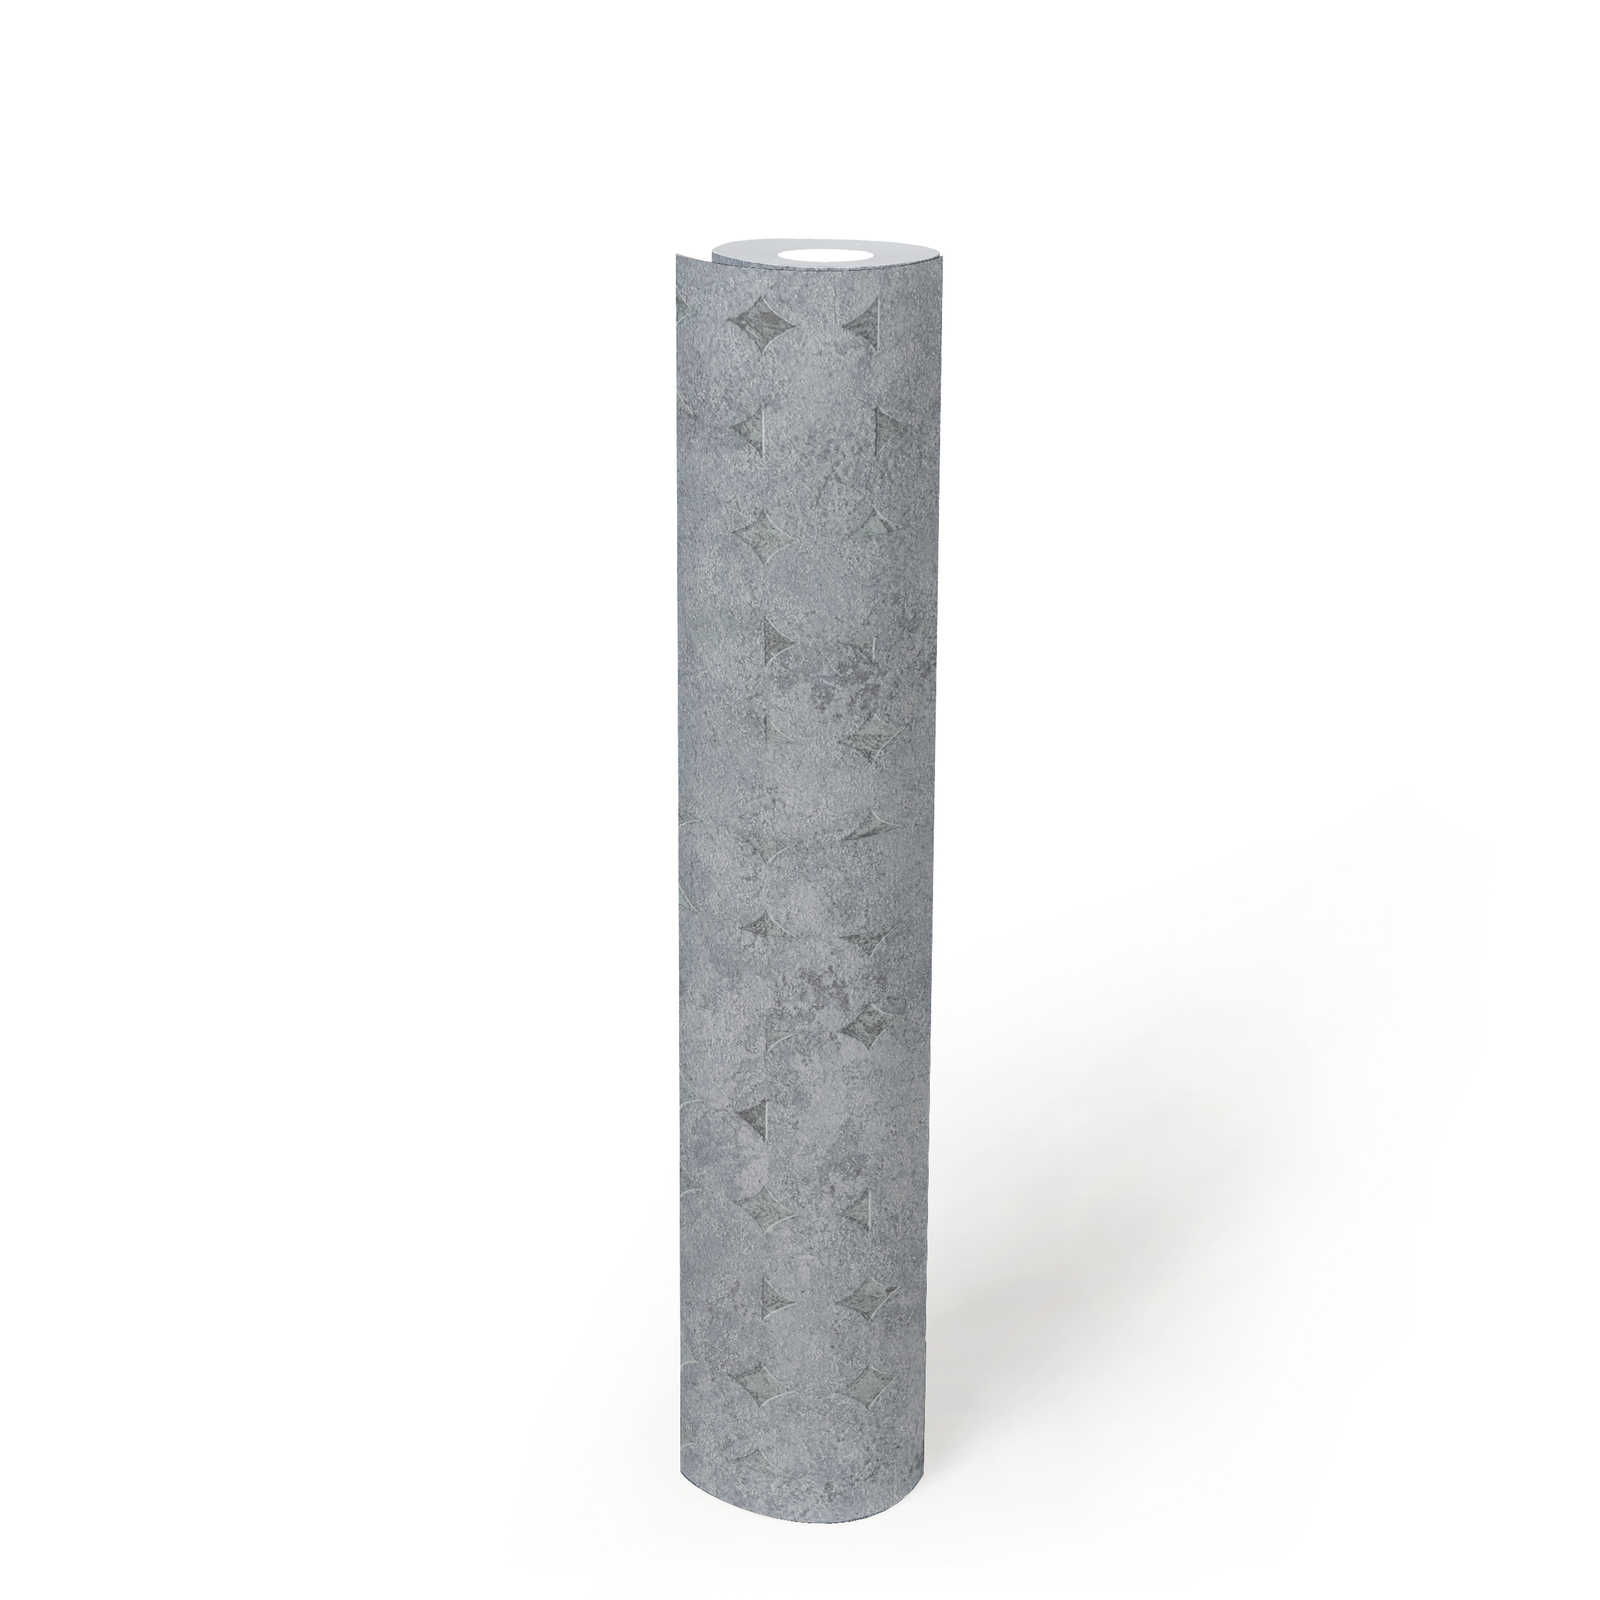             Vliestapete einfarbig mit Struktur und rauten Muster – Grau, Silber
        